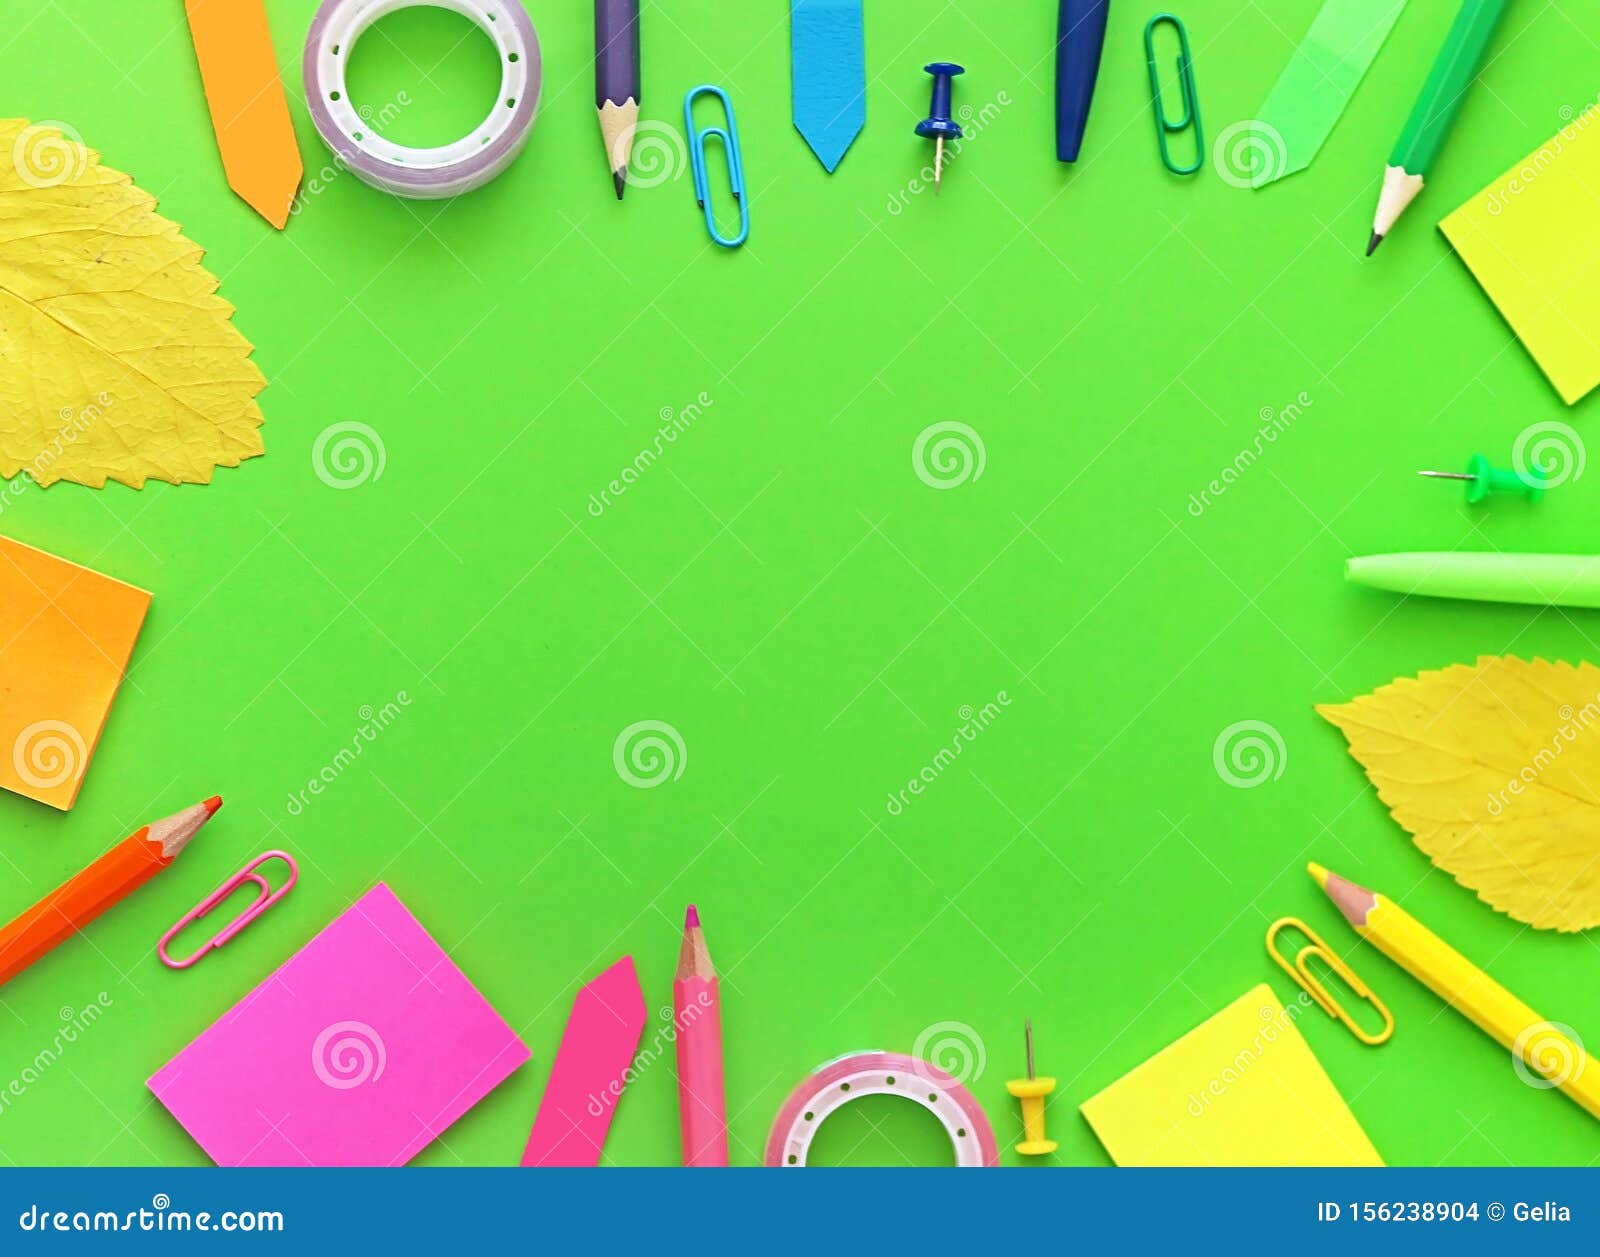 Oggetti Per La Scuola Colorati Con Foglie Autunnali Come Cornice In Verde Fotografia Stock Immagine Di Telaio Penna